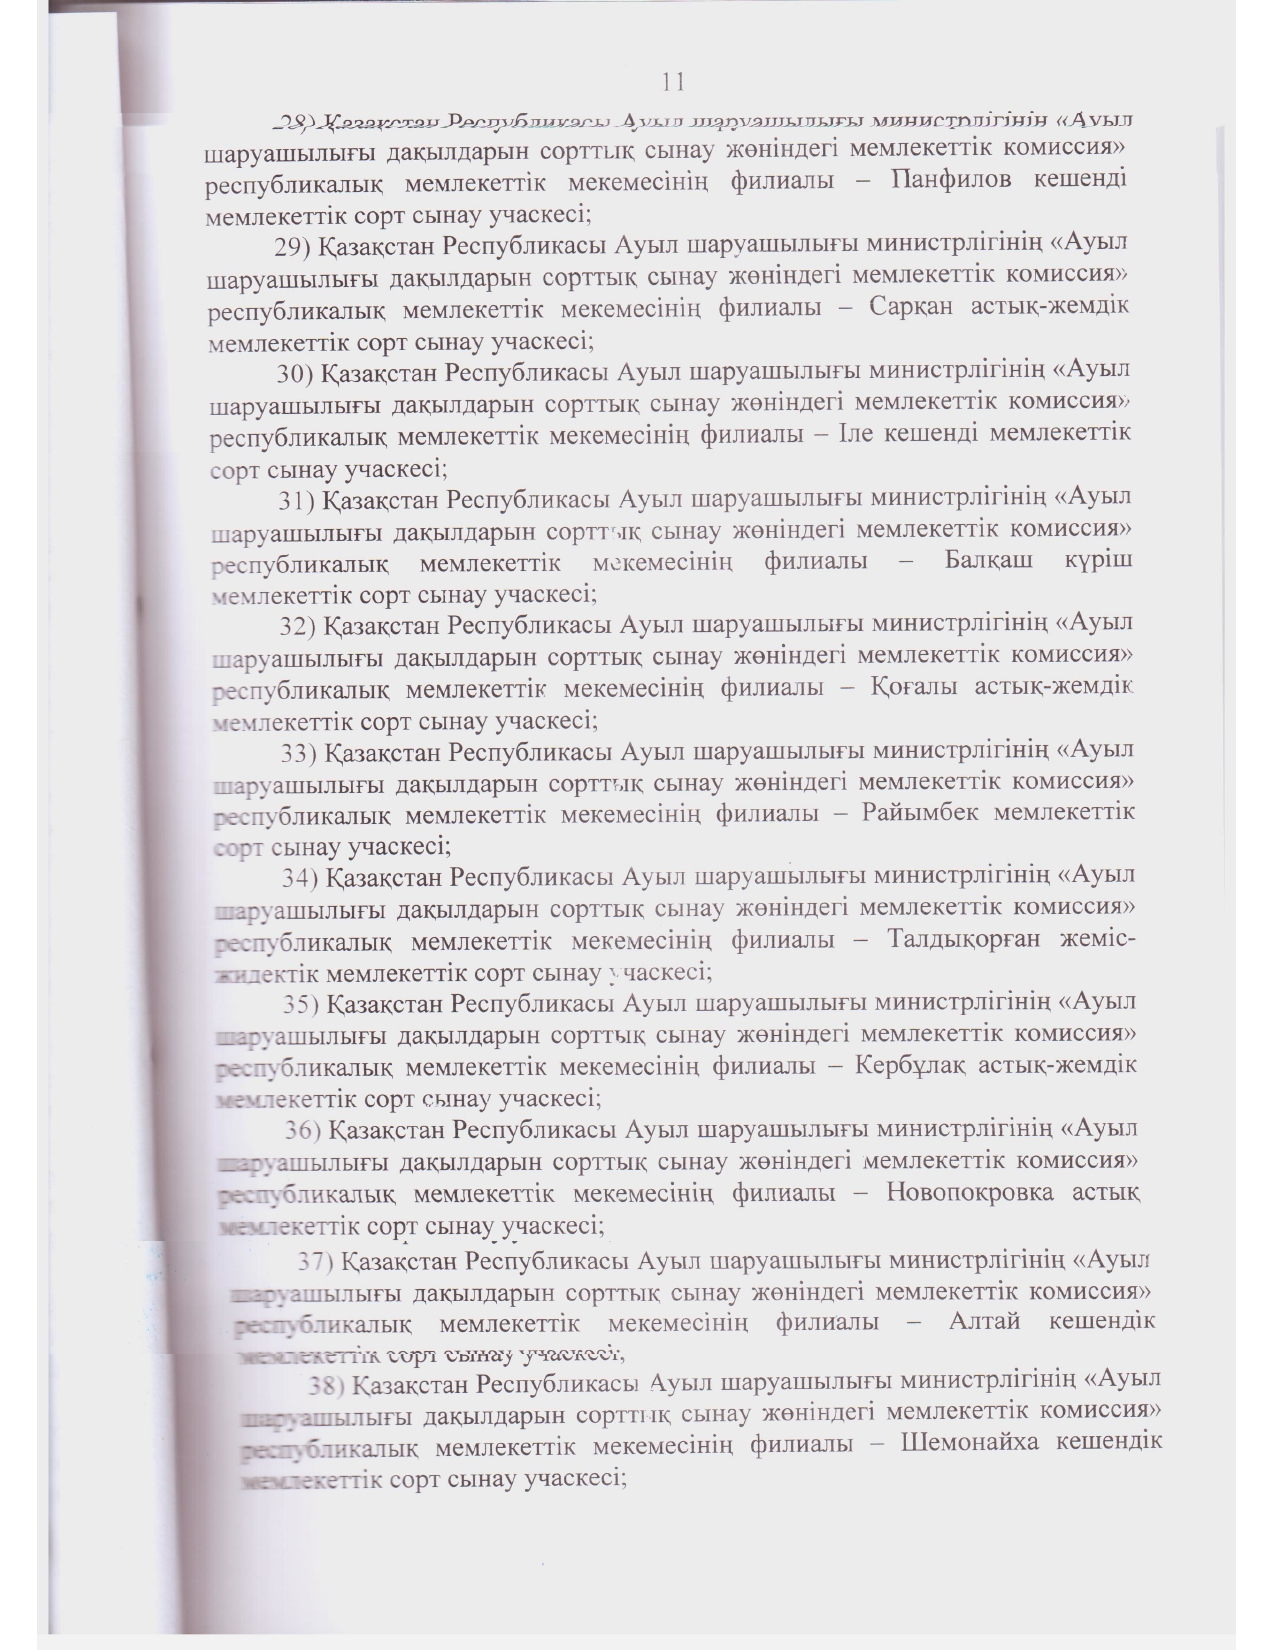 Устав ГосКомиссии_2021 год зарегистрирован_page-0010